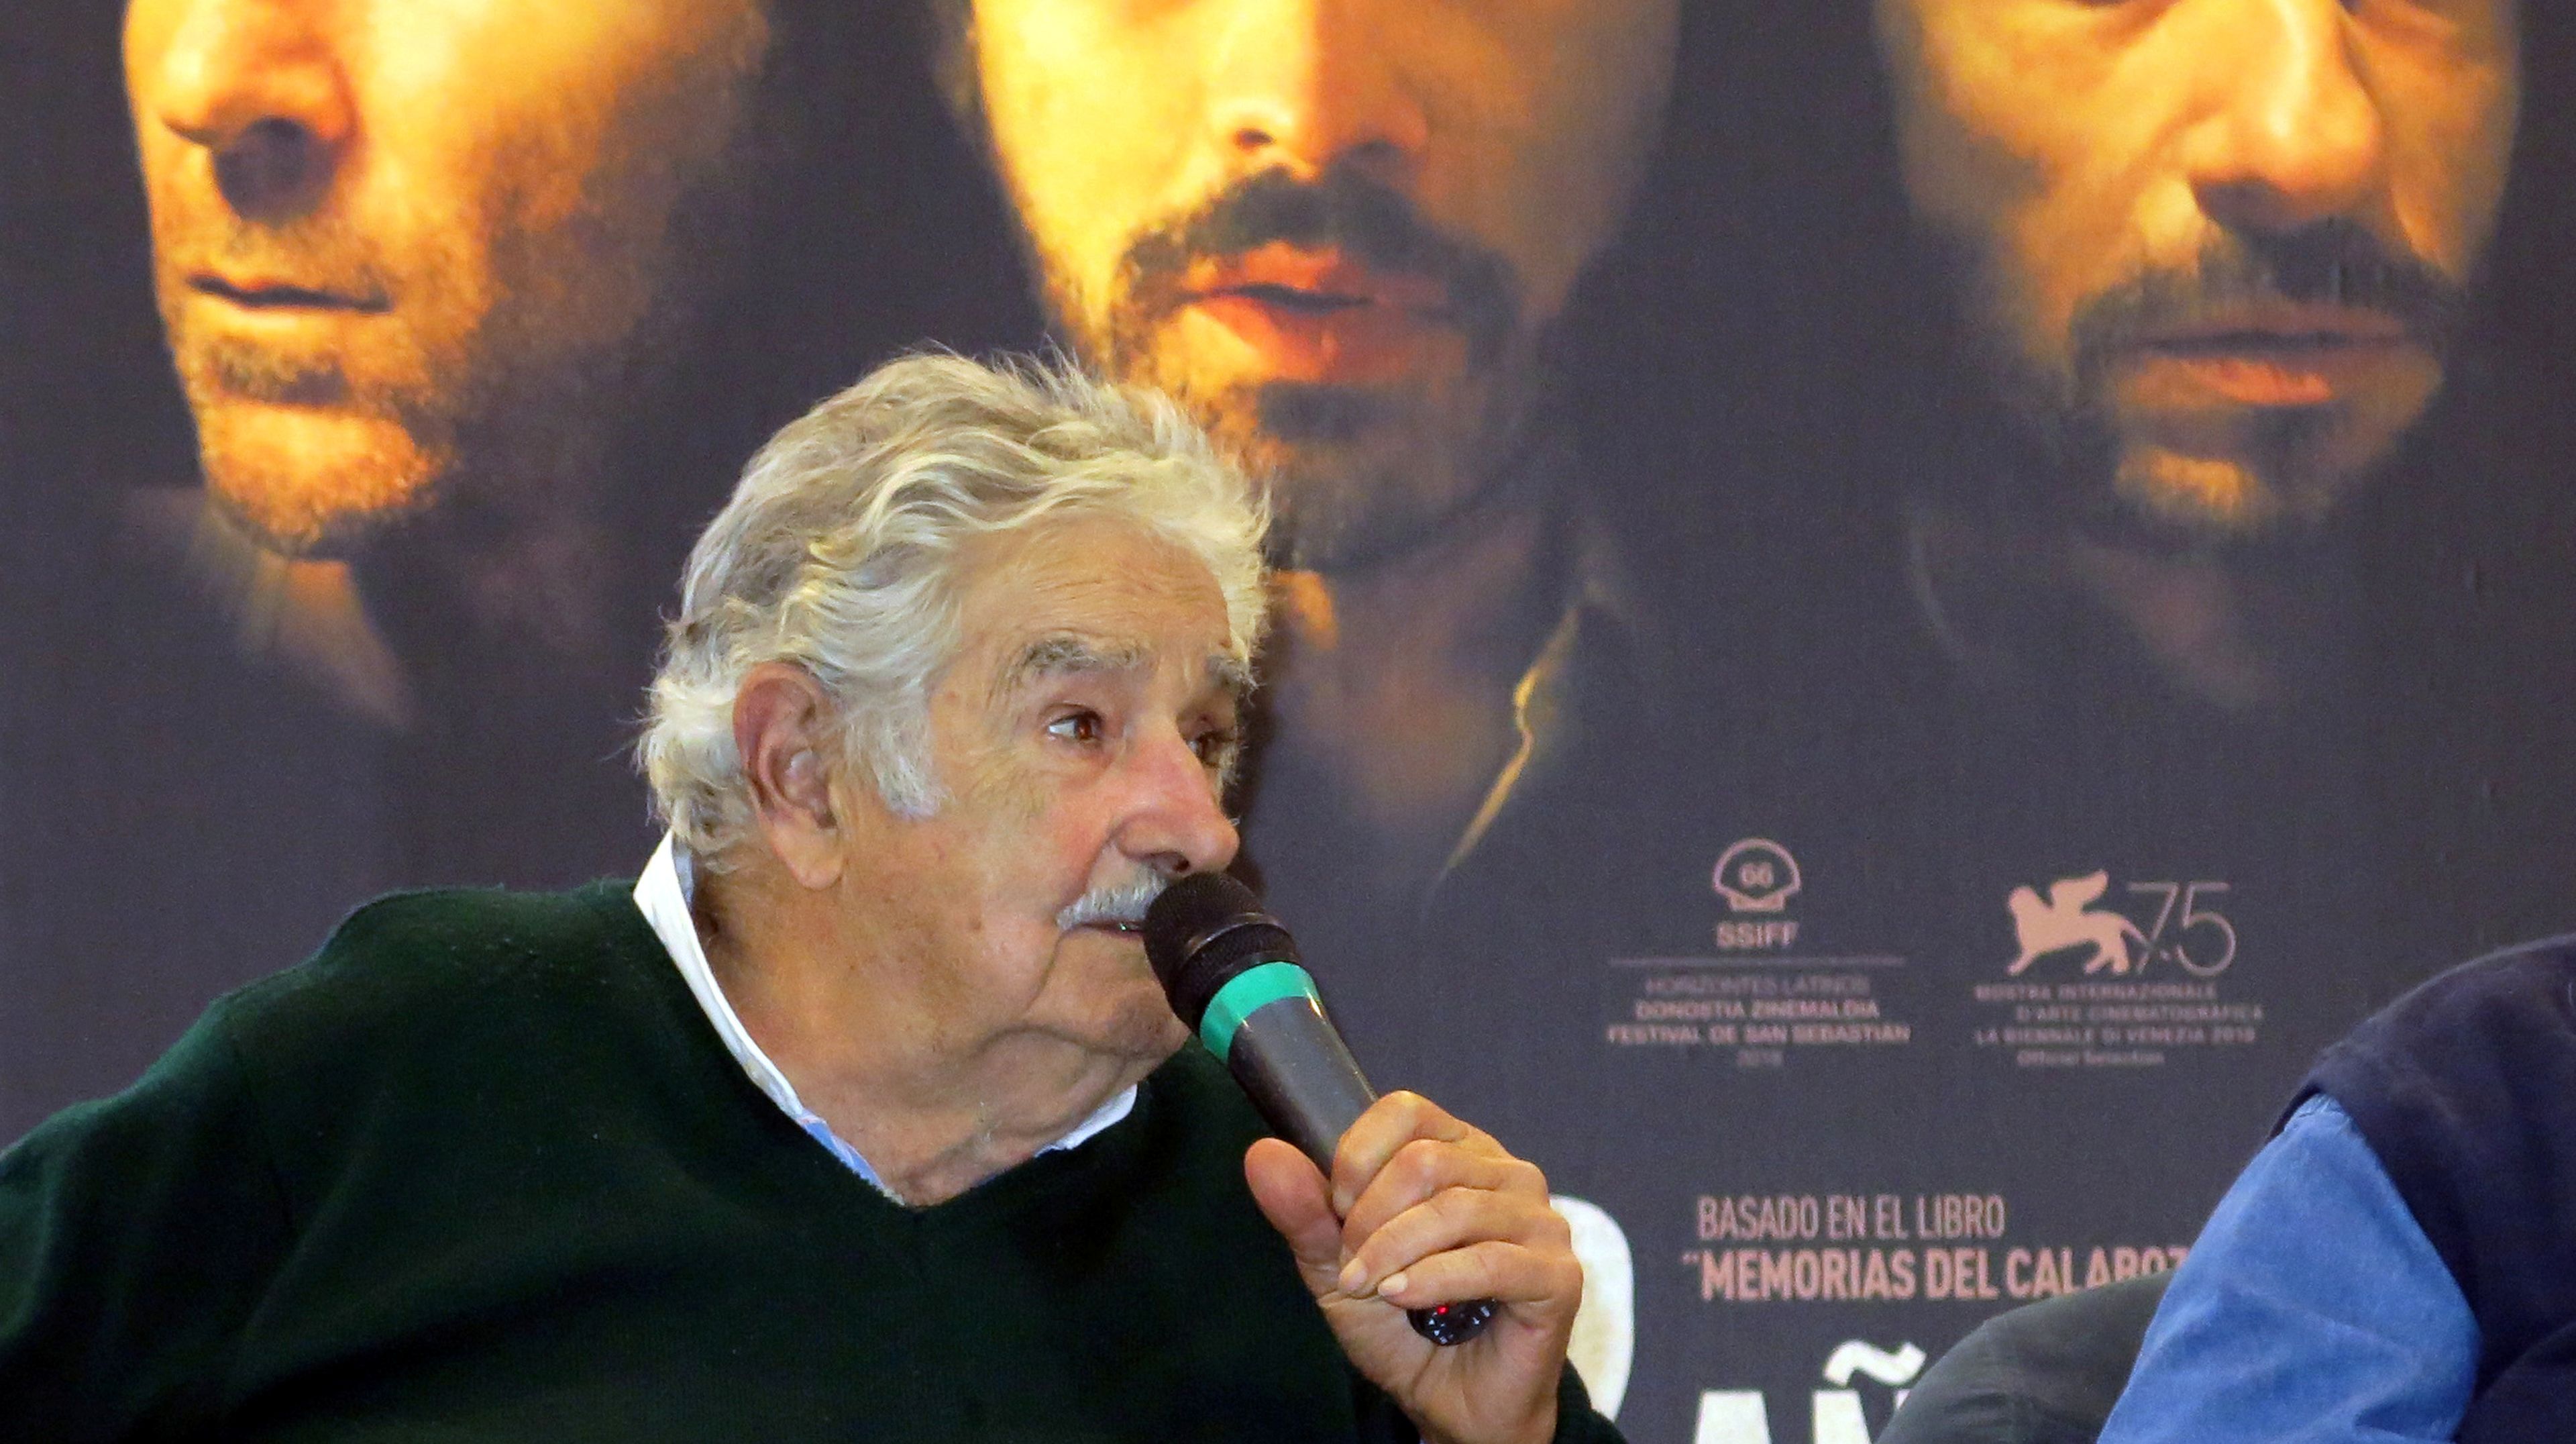 José Mujica, político y expresidente de Urugay, se coloca como el tercer personaje mejor valorado en España con un 7,87 por ciento